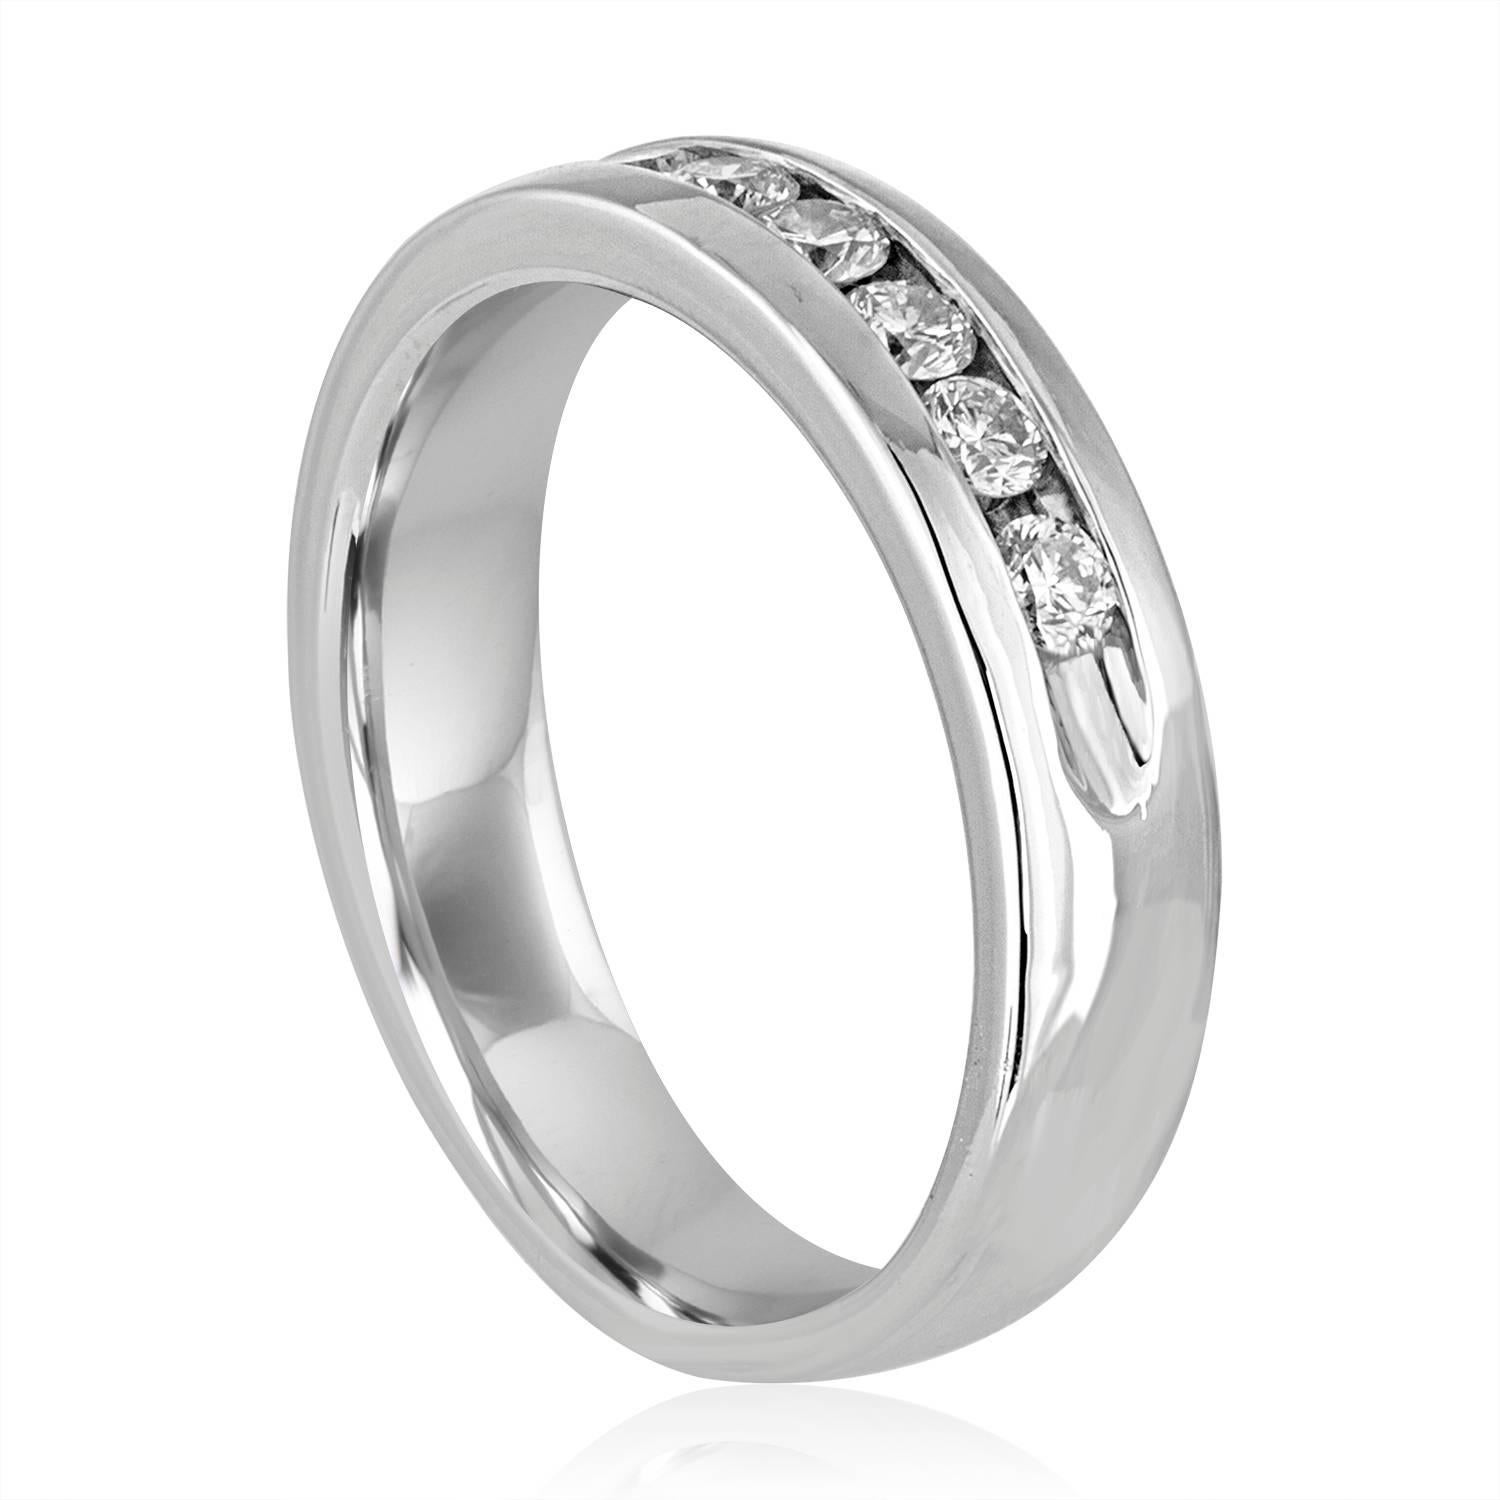 Anneau de mariage à diamant pour homme
La bague est en platine 950
Les diamants de taille ronde sont de 1.00Ct G/H VS
L'anneau est une taille 12.5, sizable
L'anneau pèse 16.4 grammes